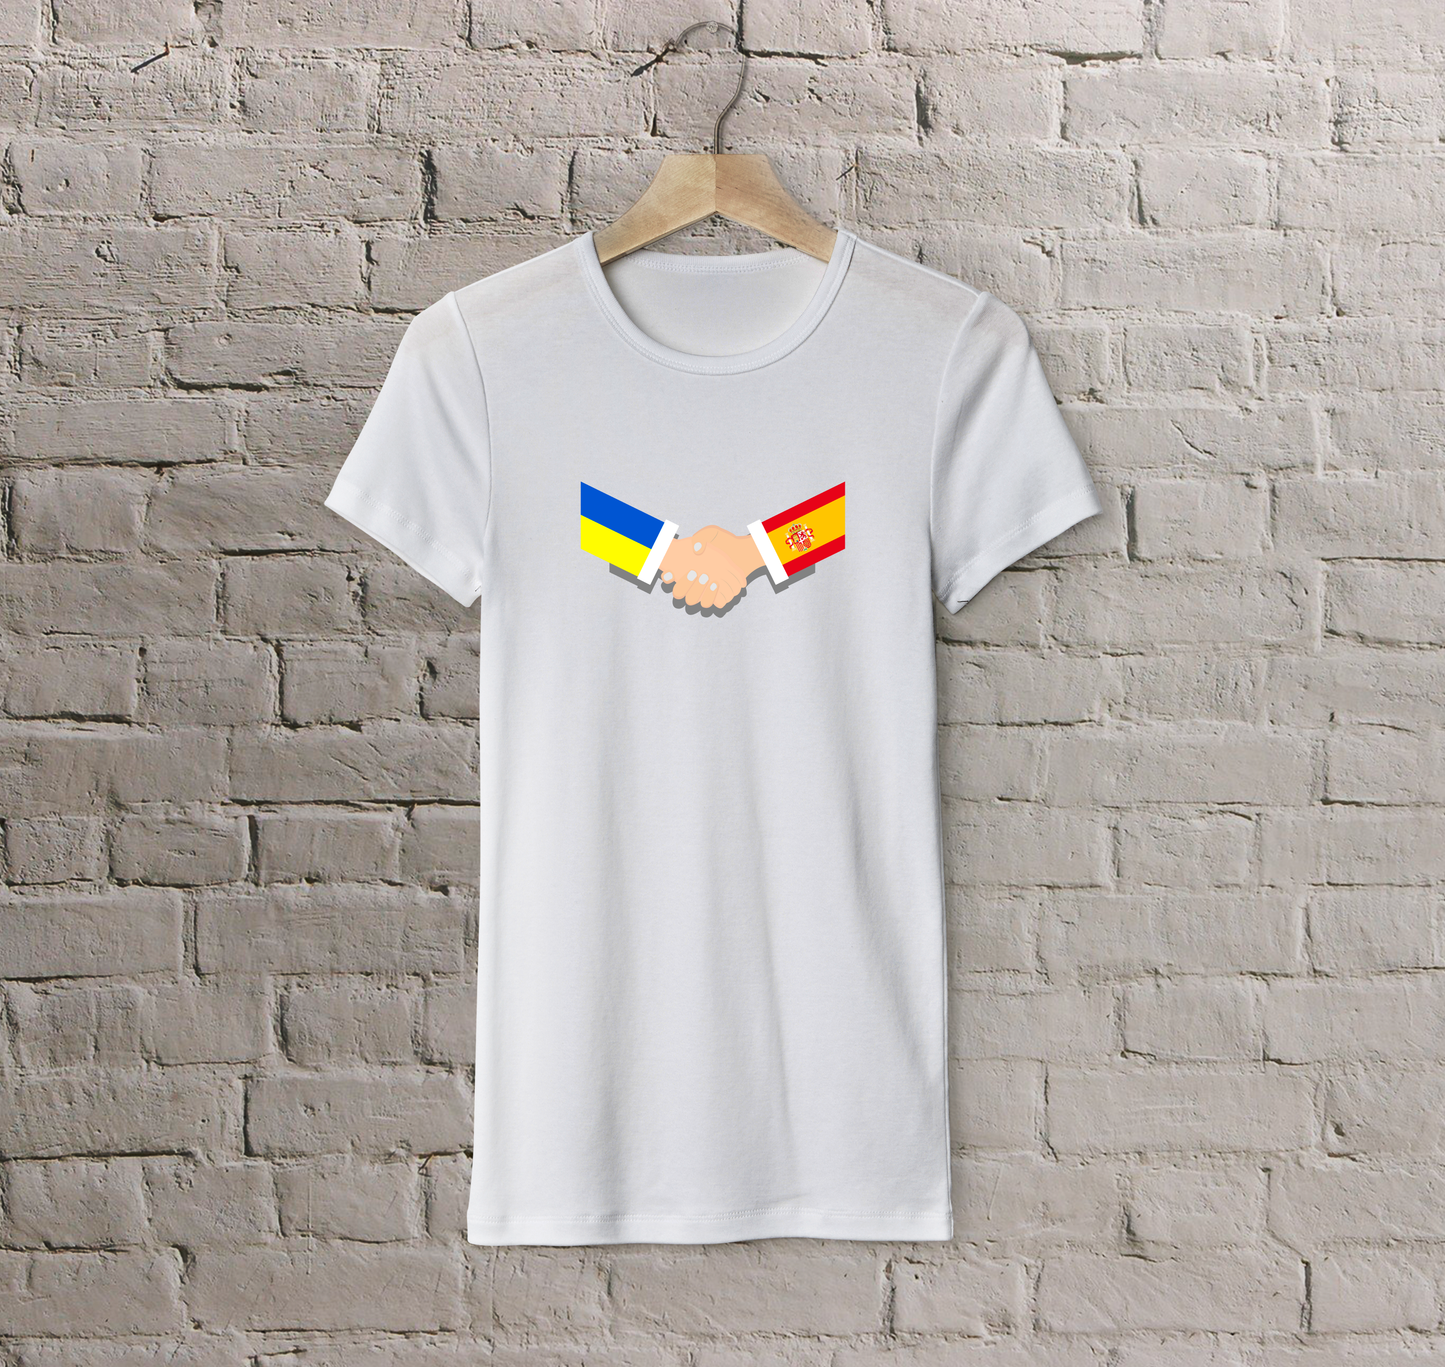 T-shirt Spain + Ukraine (handshake)